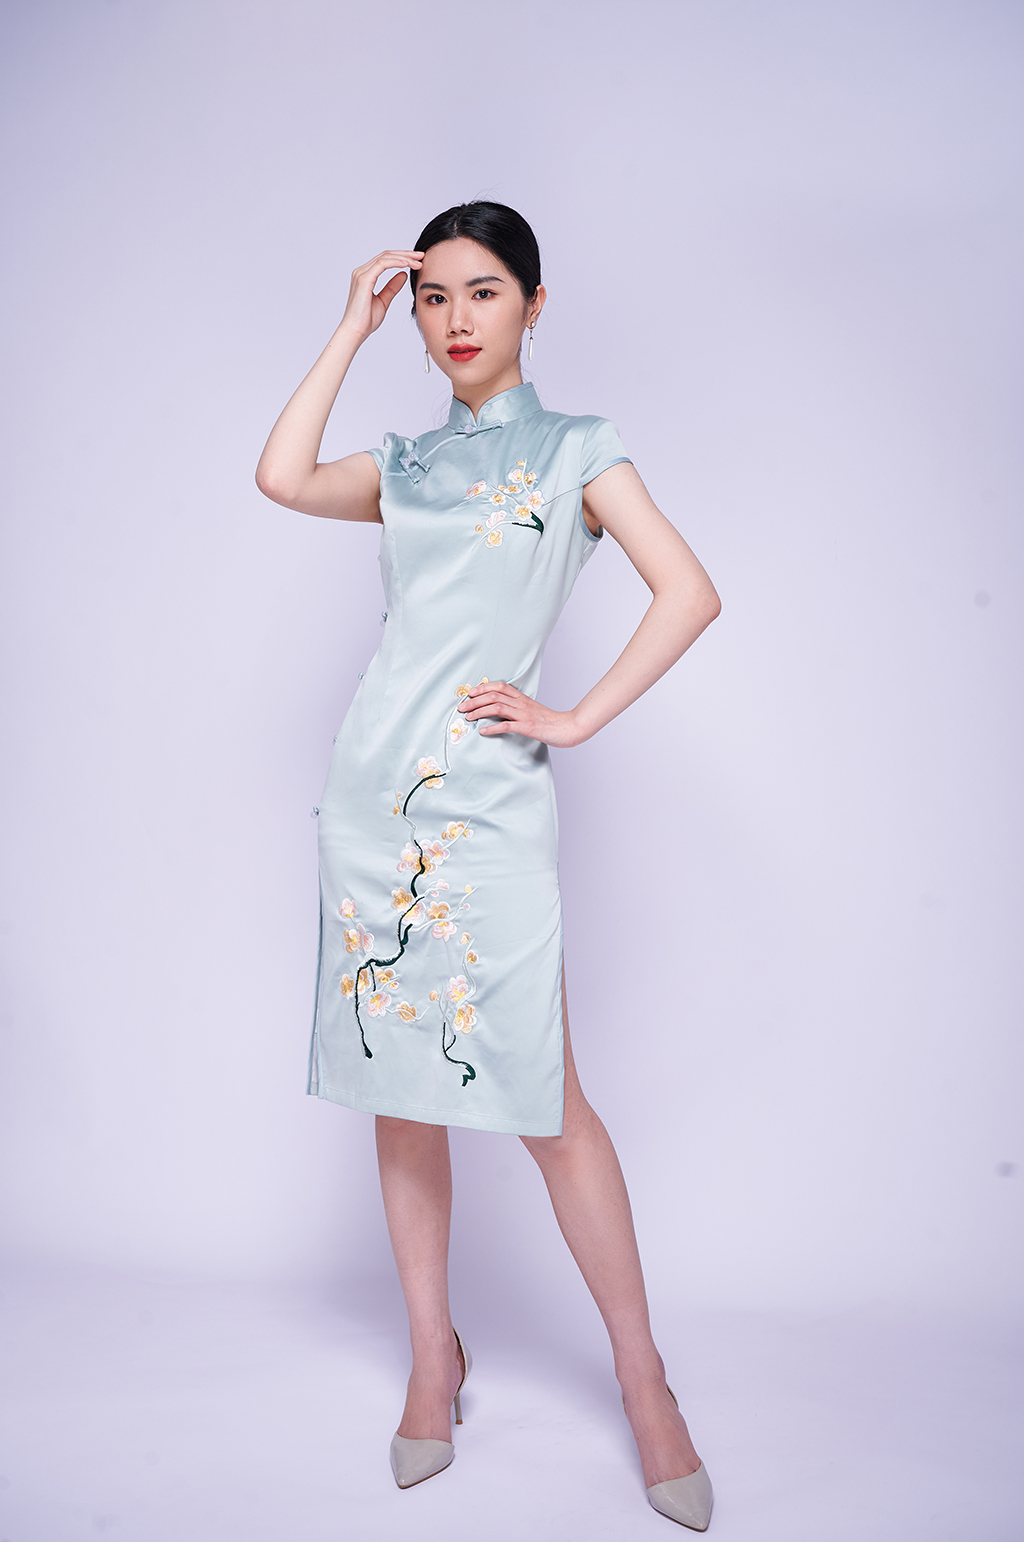 中式旗袍站立造型商业摄影图片青年女性照片